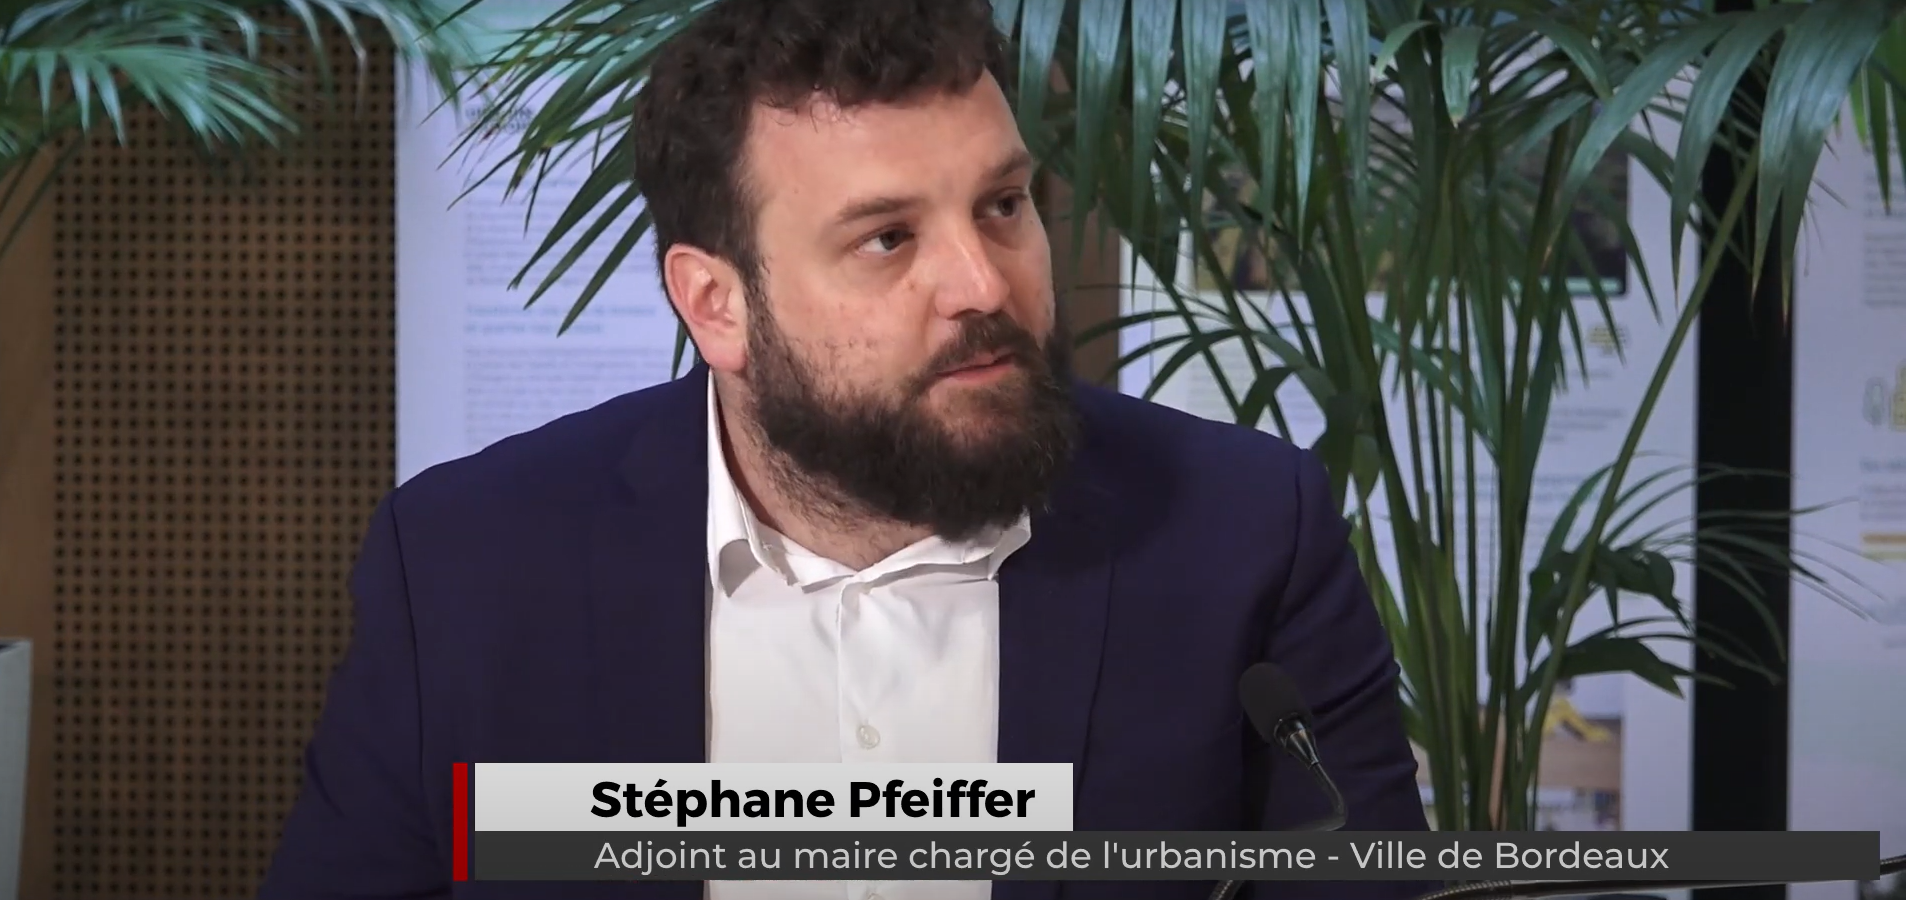 Stéphane Pfeiffer présente La Jallère : un exemple de recyclage urbain au nord de Bordeaux